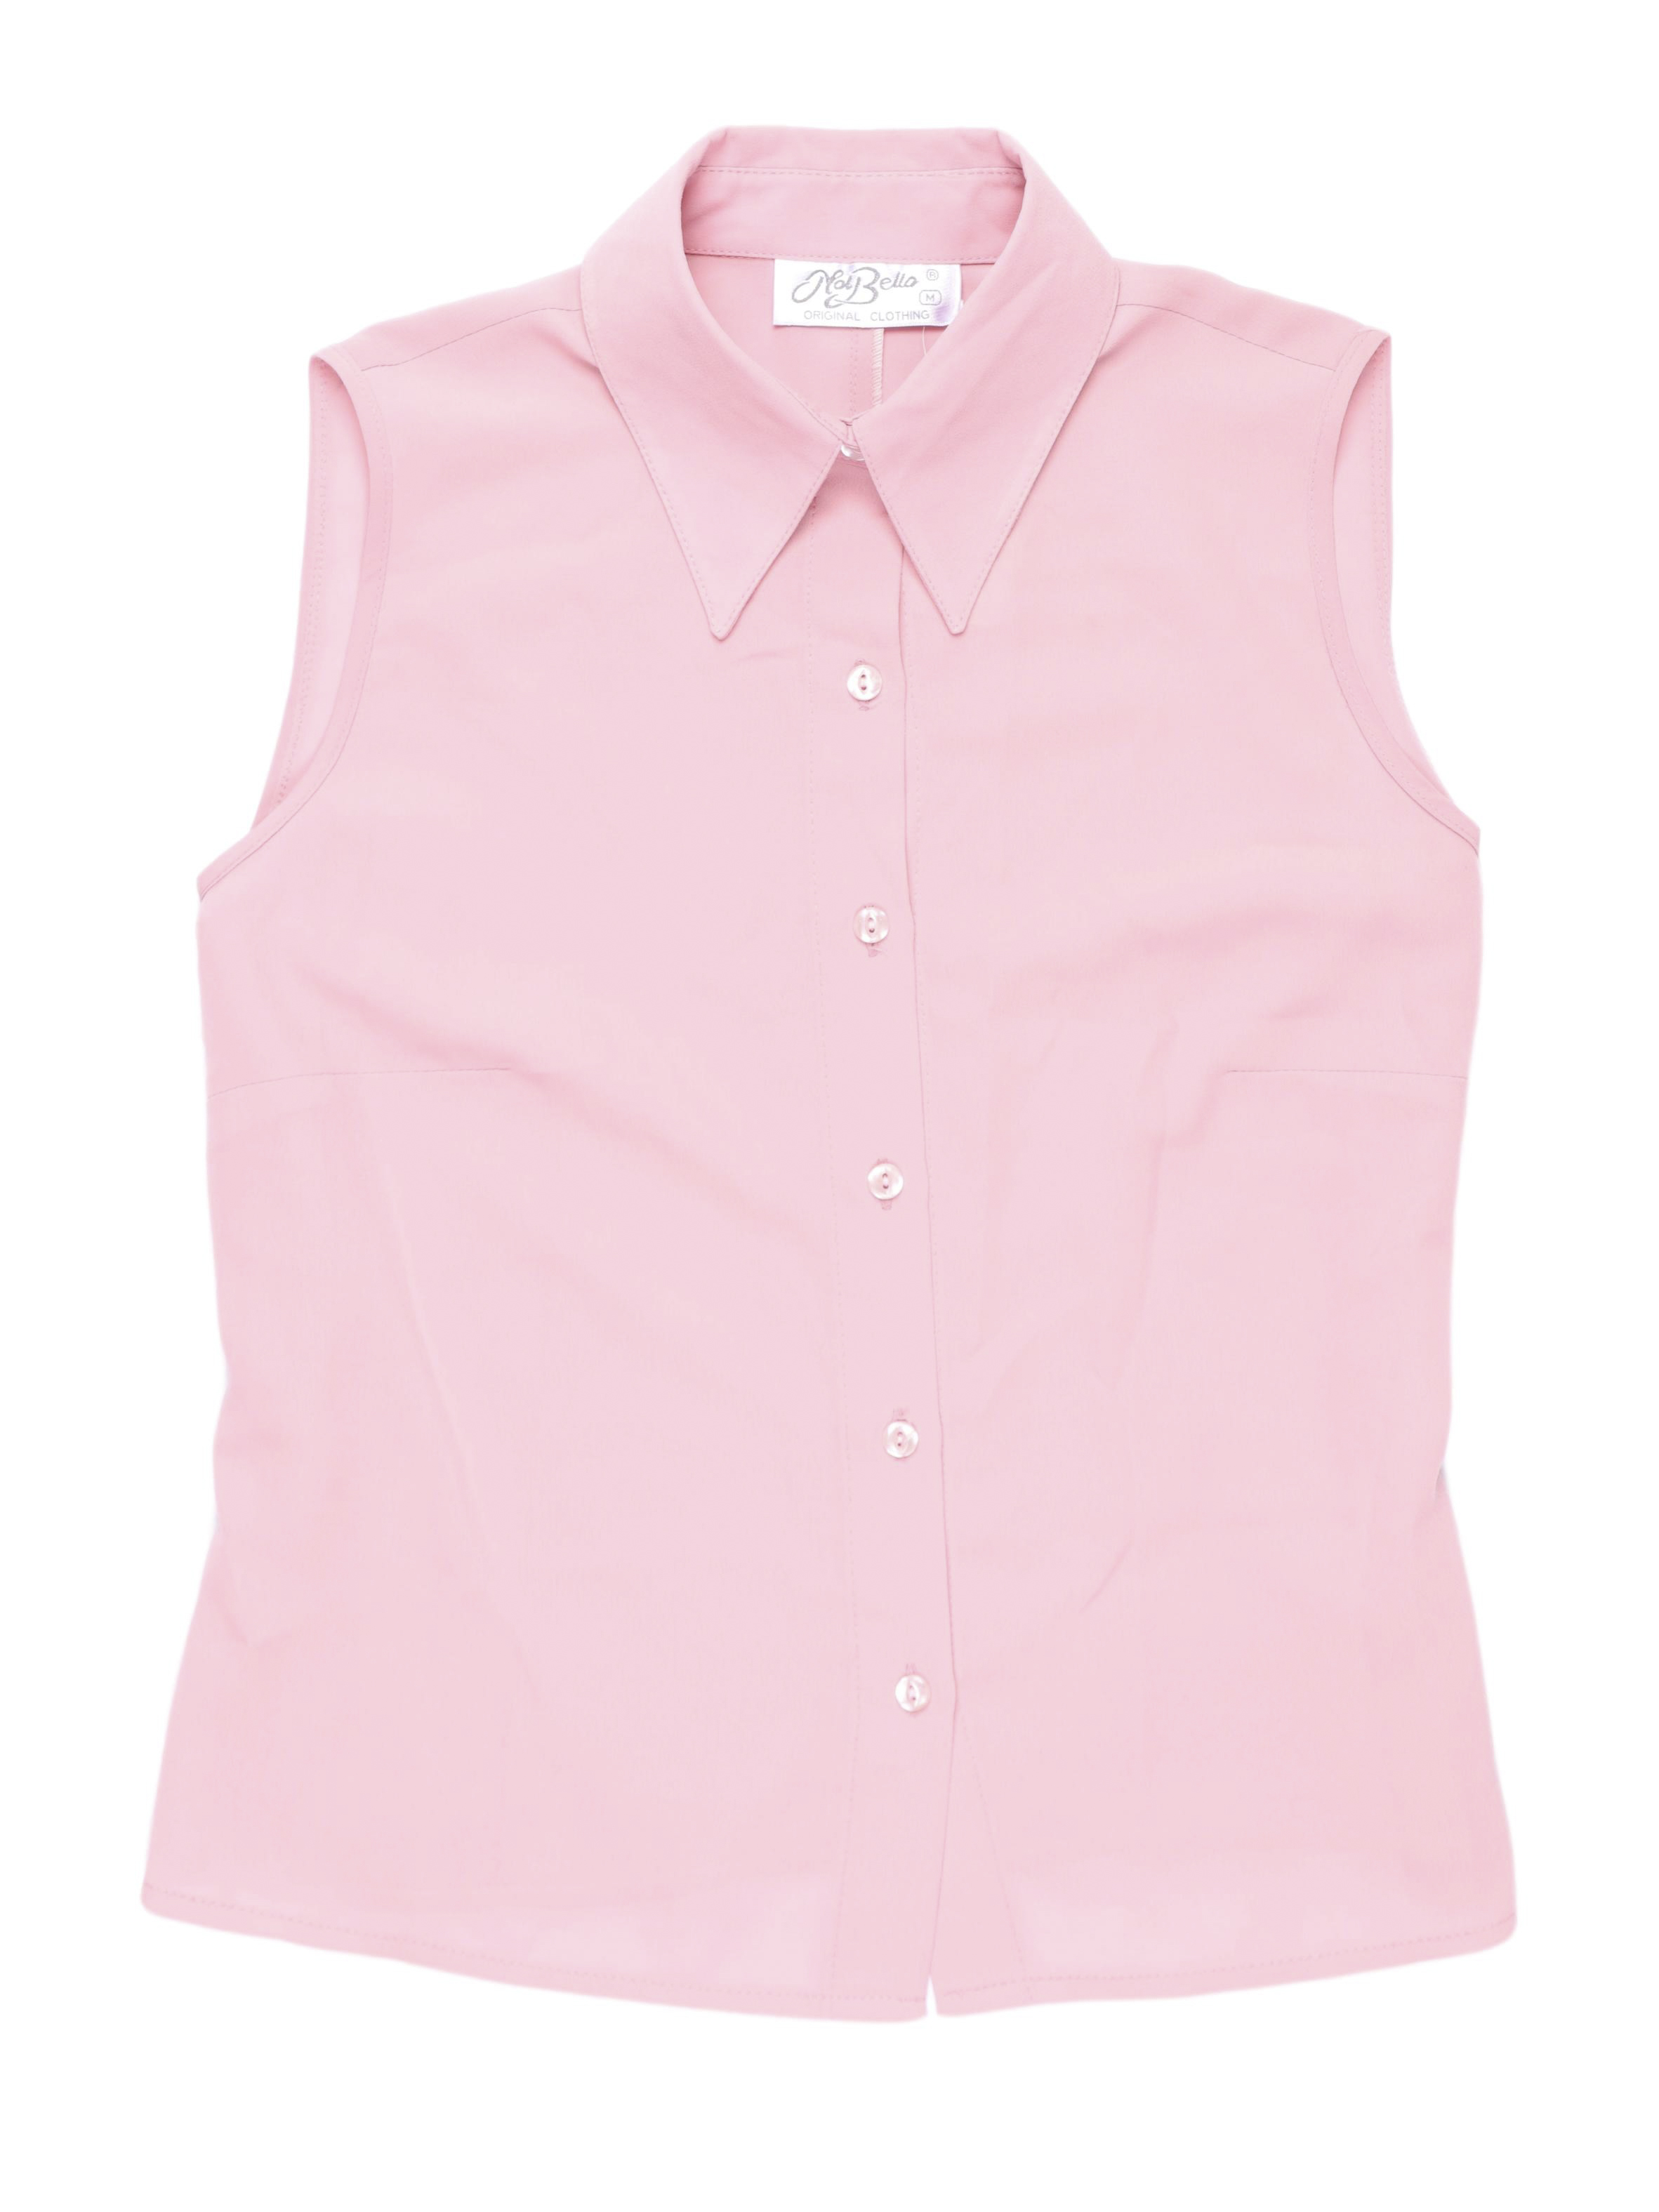 Blusa rosa con manga cero, camisera con pinzas en la espalda. Busto 98cm